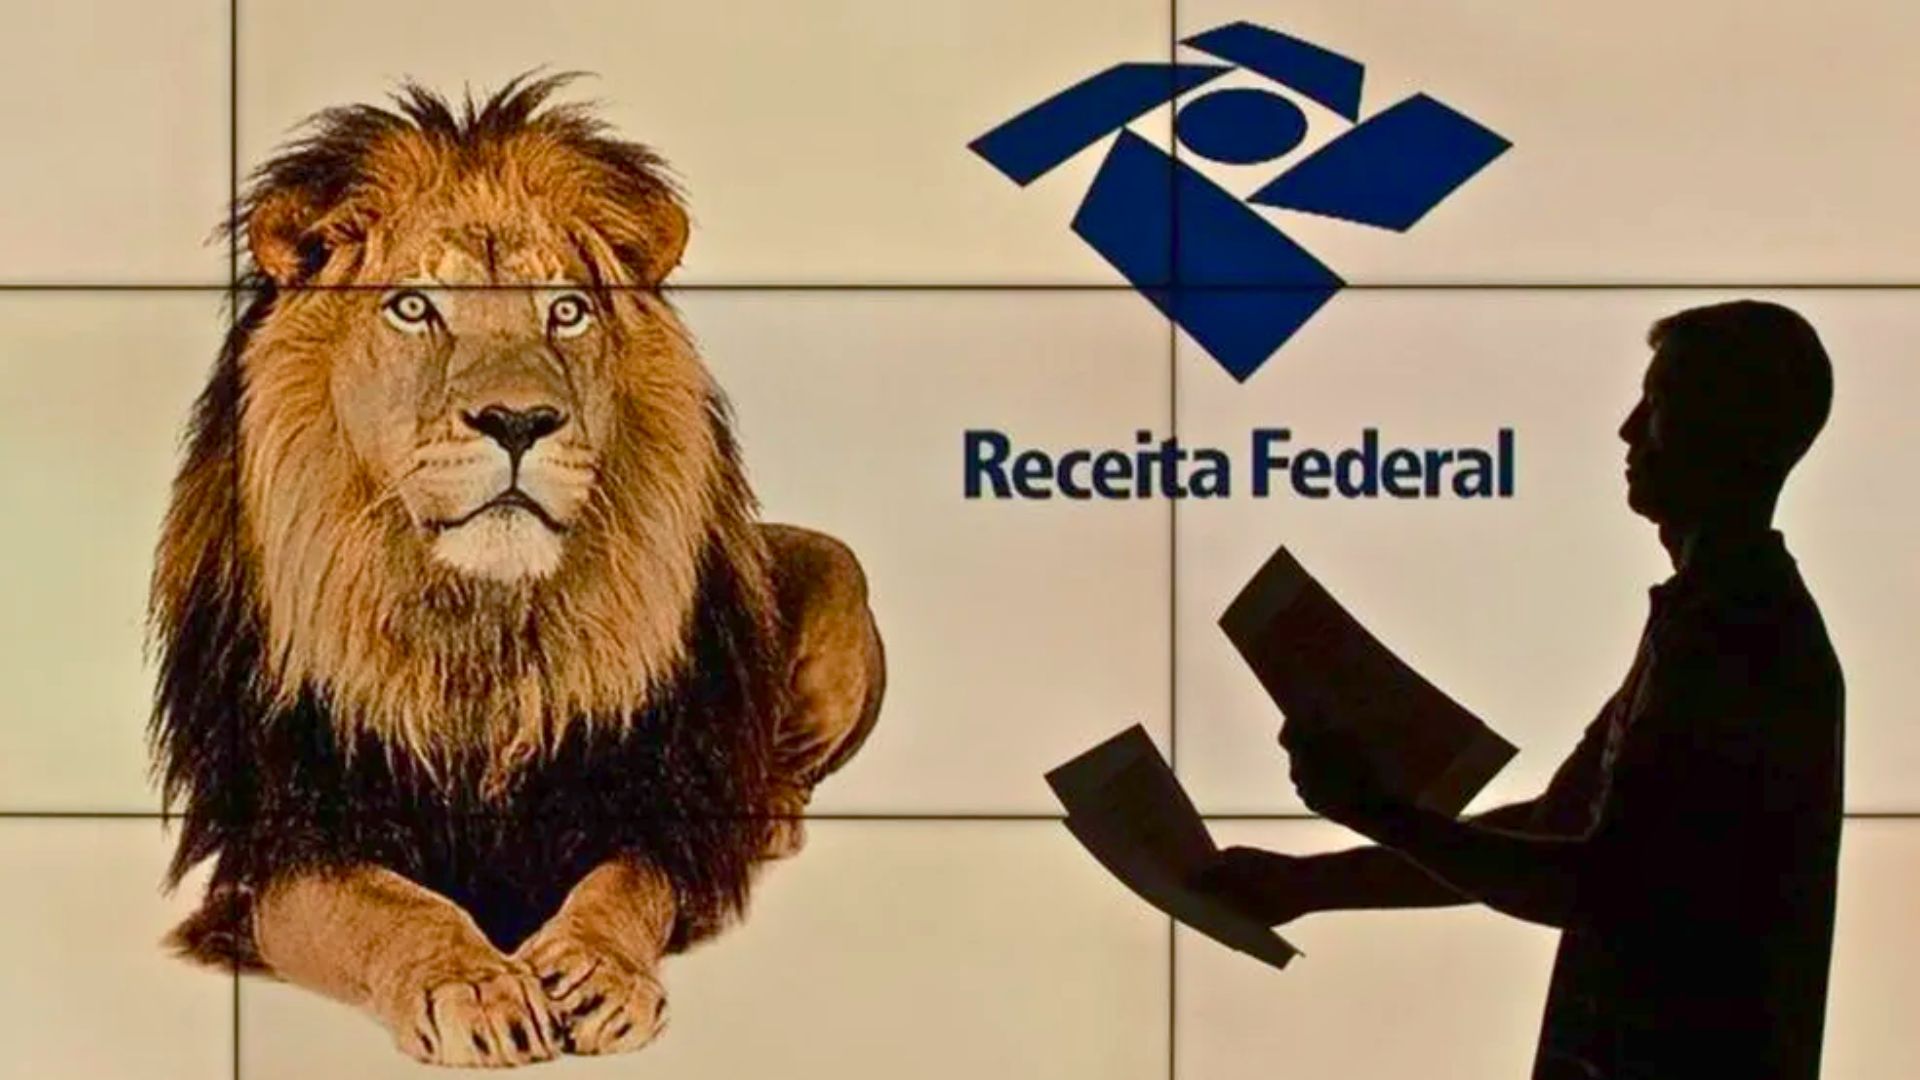 Leão da Receita Federal - Representação do Imposto de Renda